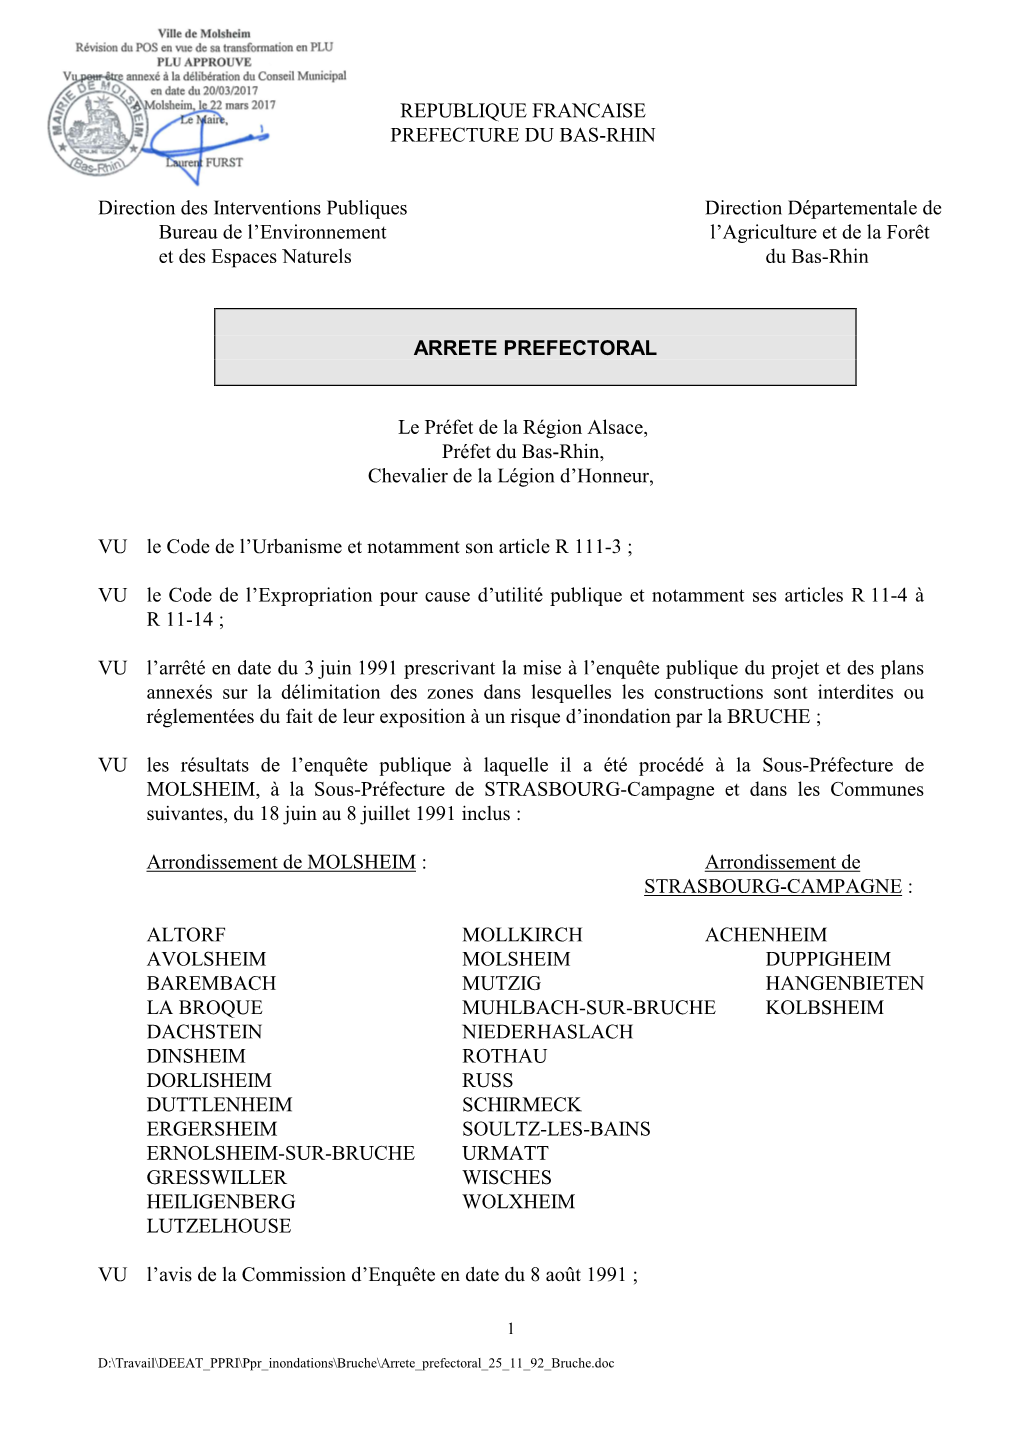 Republique Francaise Prefecture Du Bas